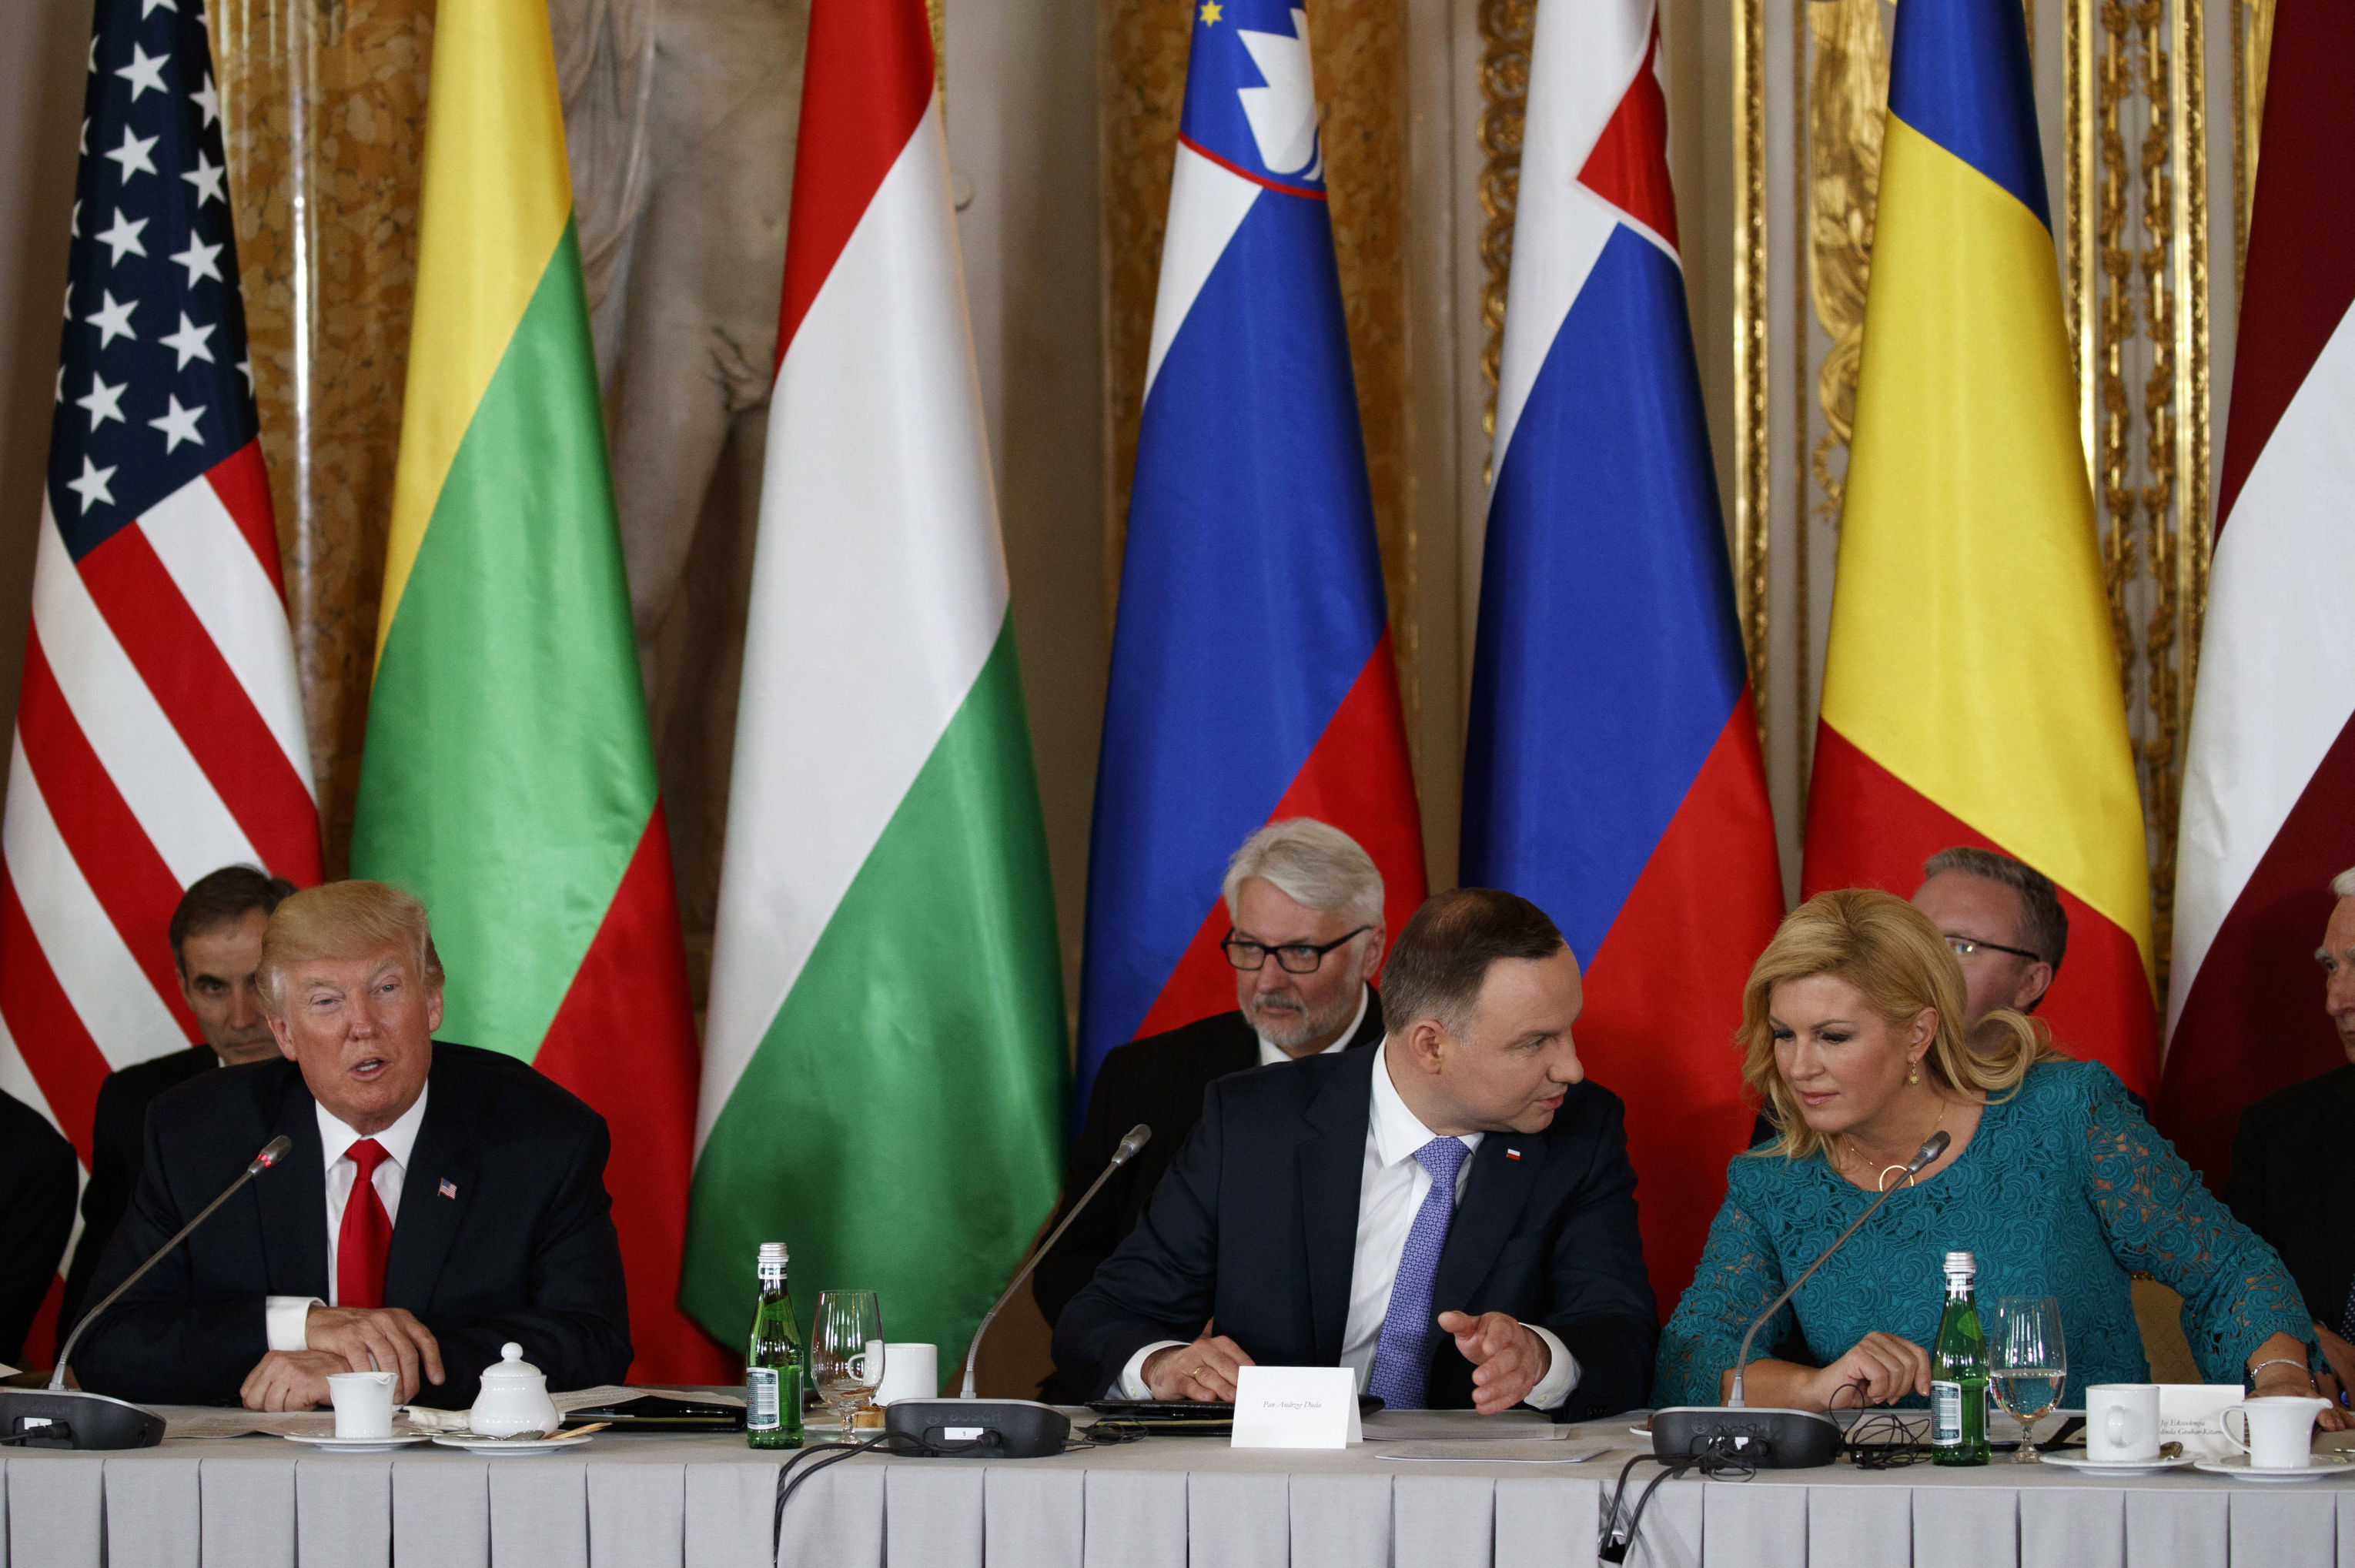 Президент США Дональд Трамп (слева), президент Польши Анджей Дуда (в центре) и президент Хорватии Колиндой Грабар-Китарович,  во время трансатлантического круглого стола "Инициатива трёх морей" в Большом зале Ассамблеи Королевского замка, в Варшаве, 6 июля 2017 года